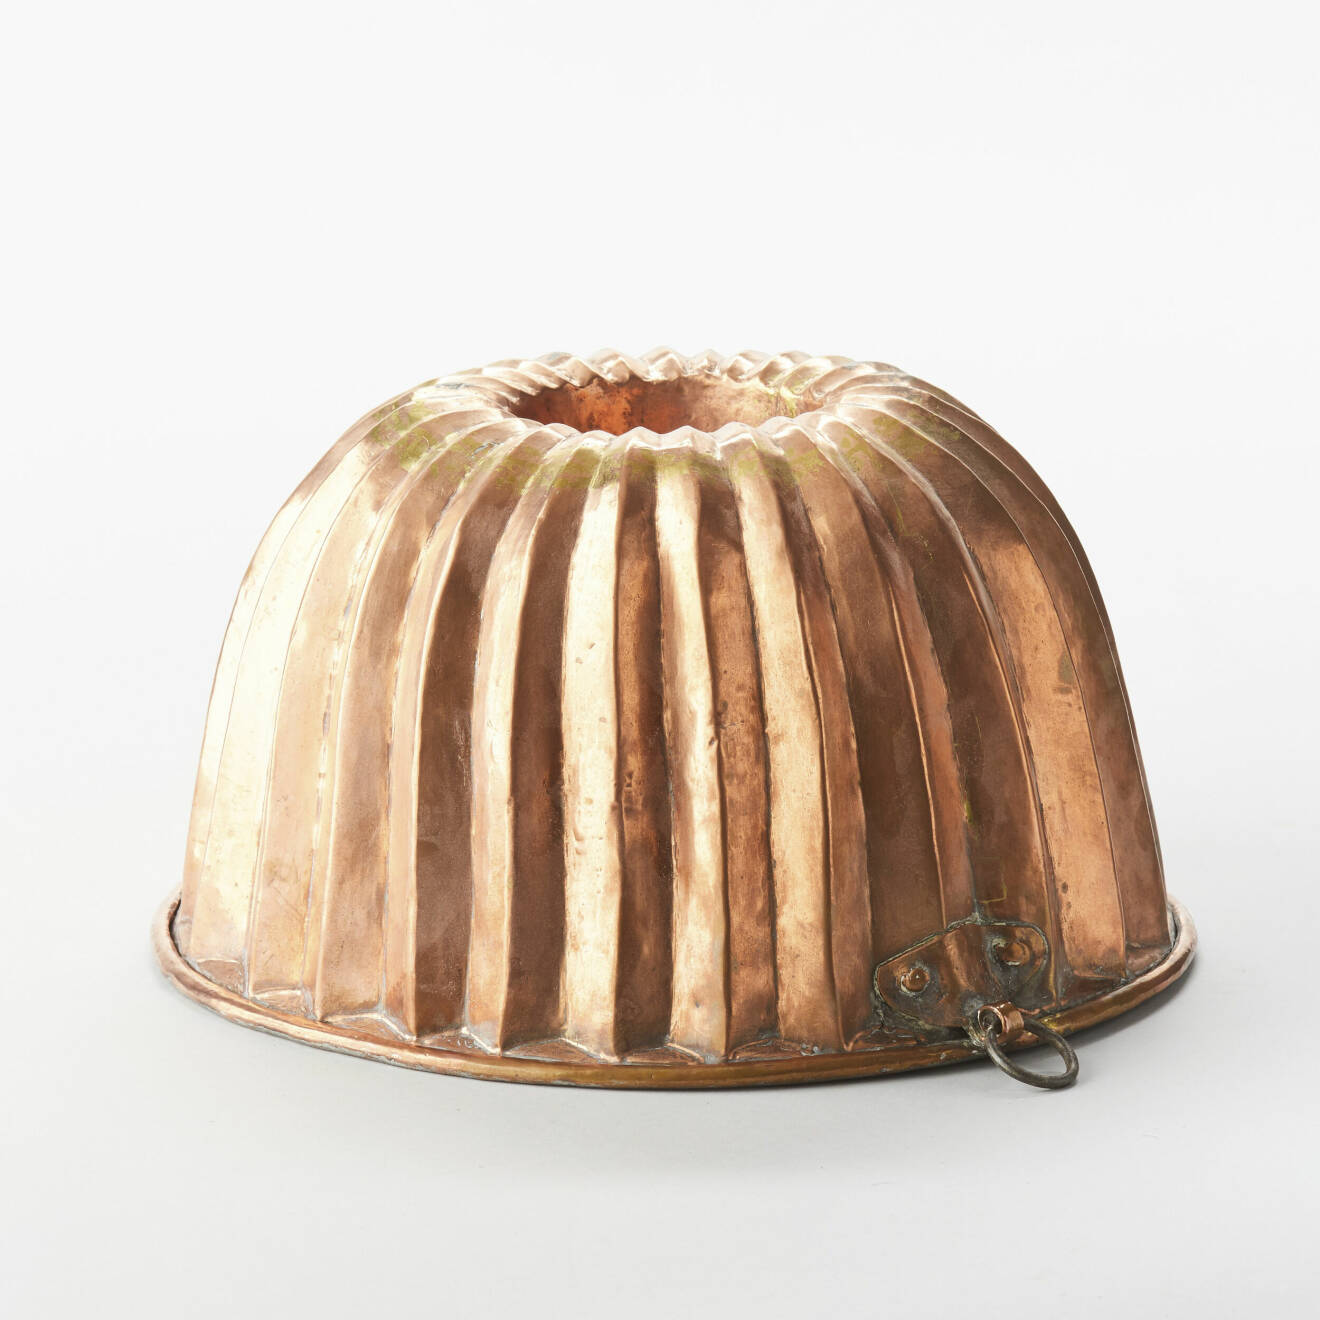 Vacker form för mjuk kaka eller pudding från början av 1800-talet. Kopparformen är förtennad inuti och kommer från en svensk privatsamling. Höjden är 19cm. Klubbat pris på Uppsala Auktionskammare blev 2200kr.